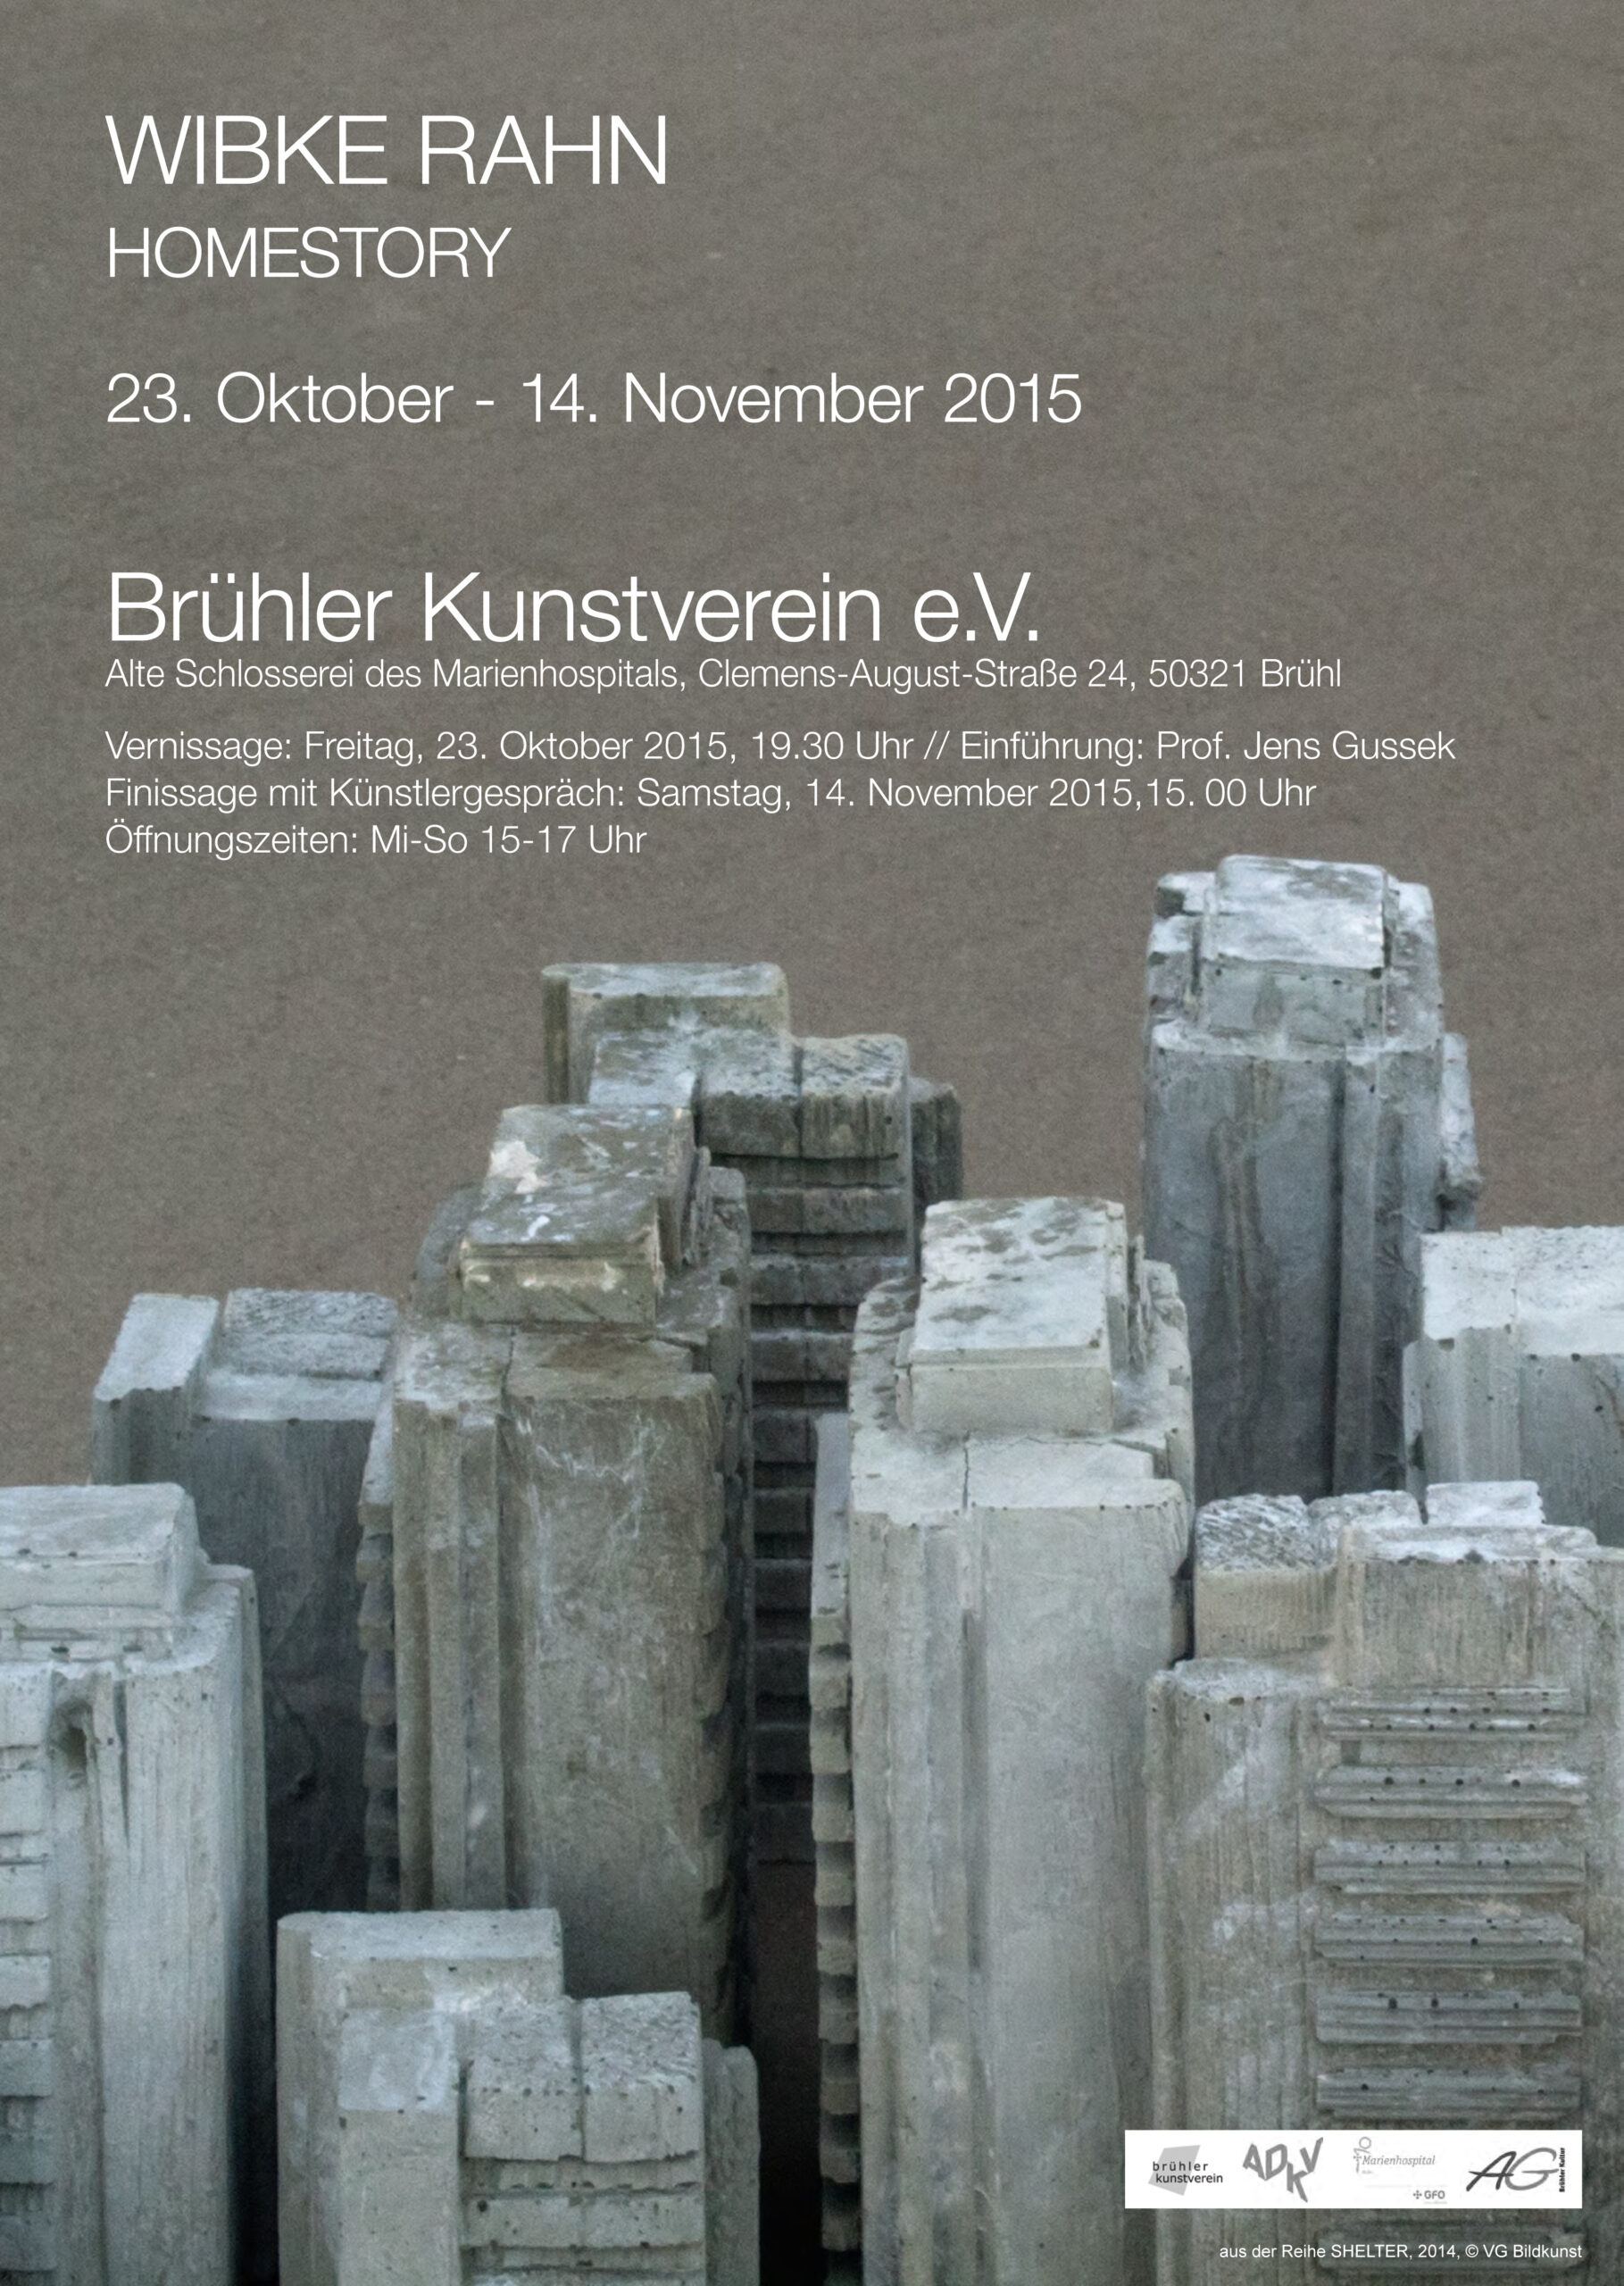 Einladung zur Ausstellung Homestory Brühler Kunstverein